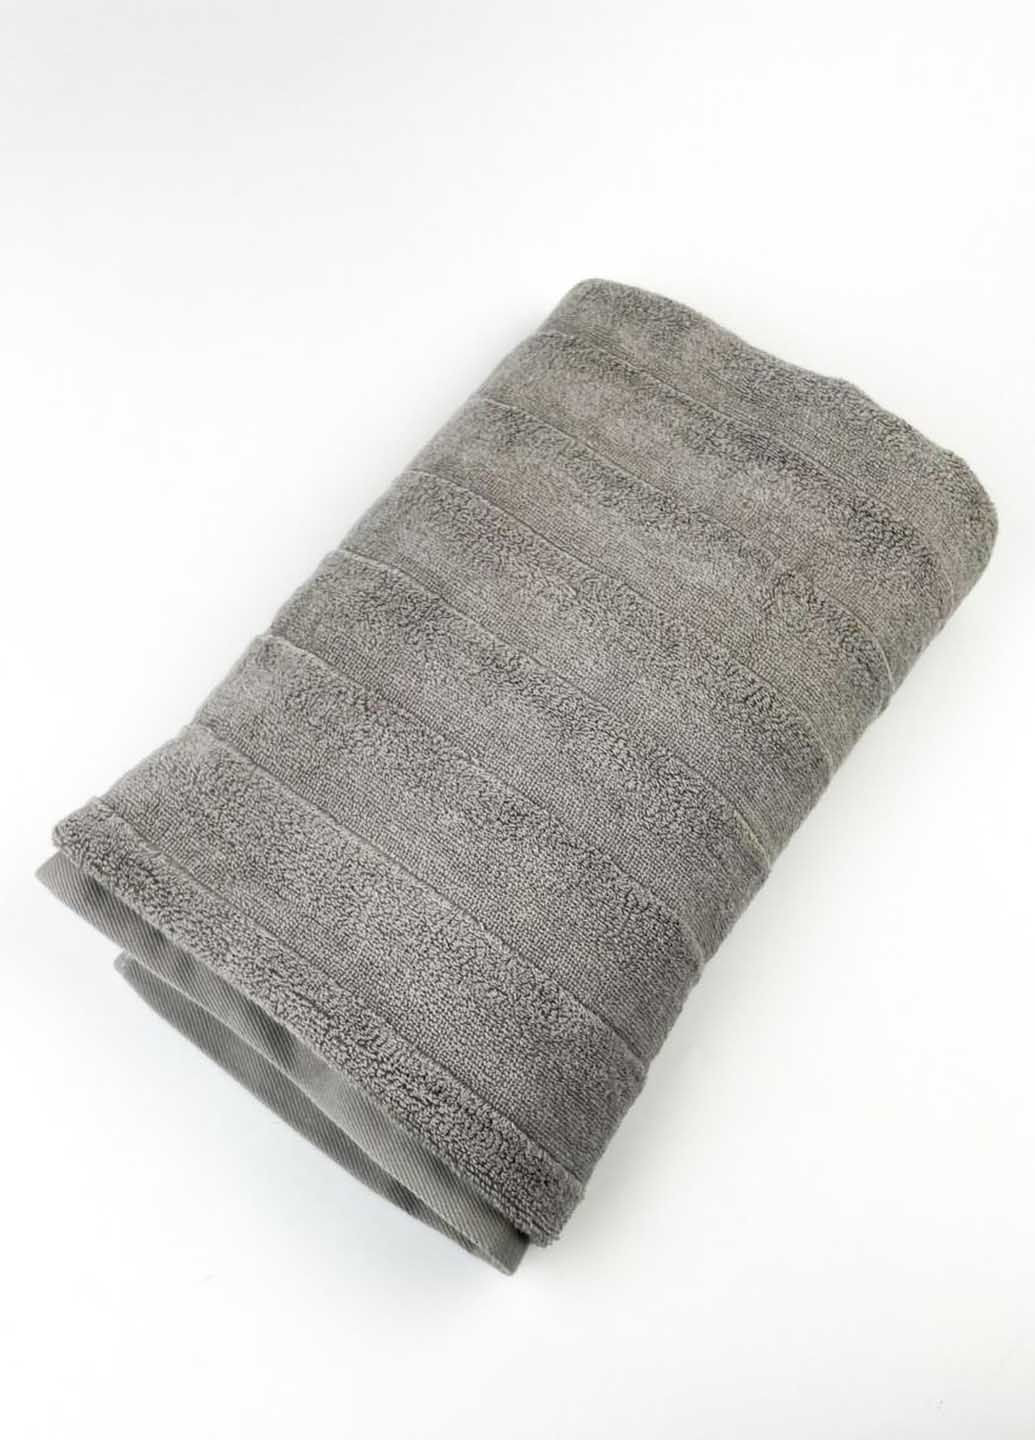 Homedec полотенце банное махровое 140х70 см полоска серый производство - Турция